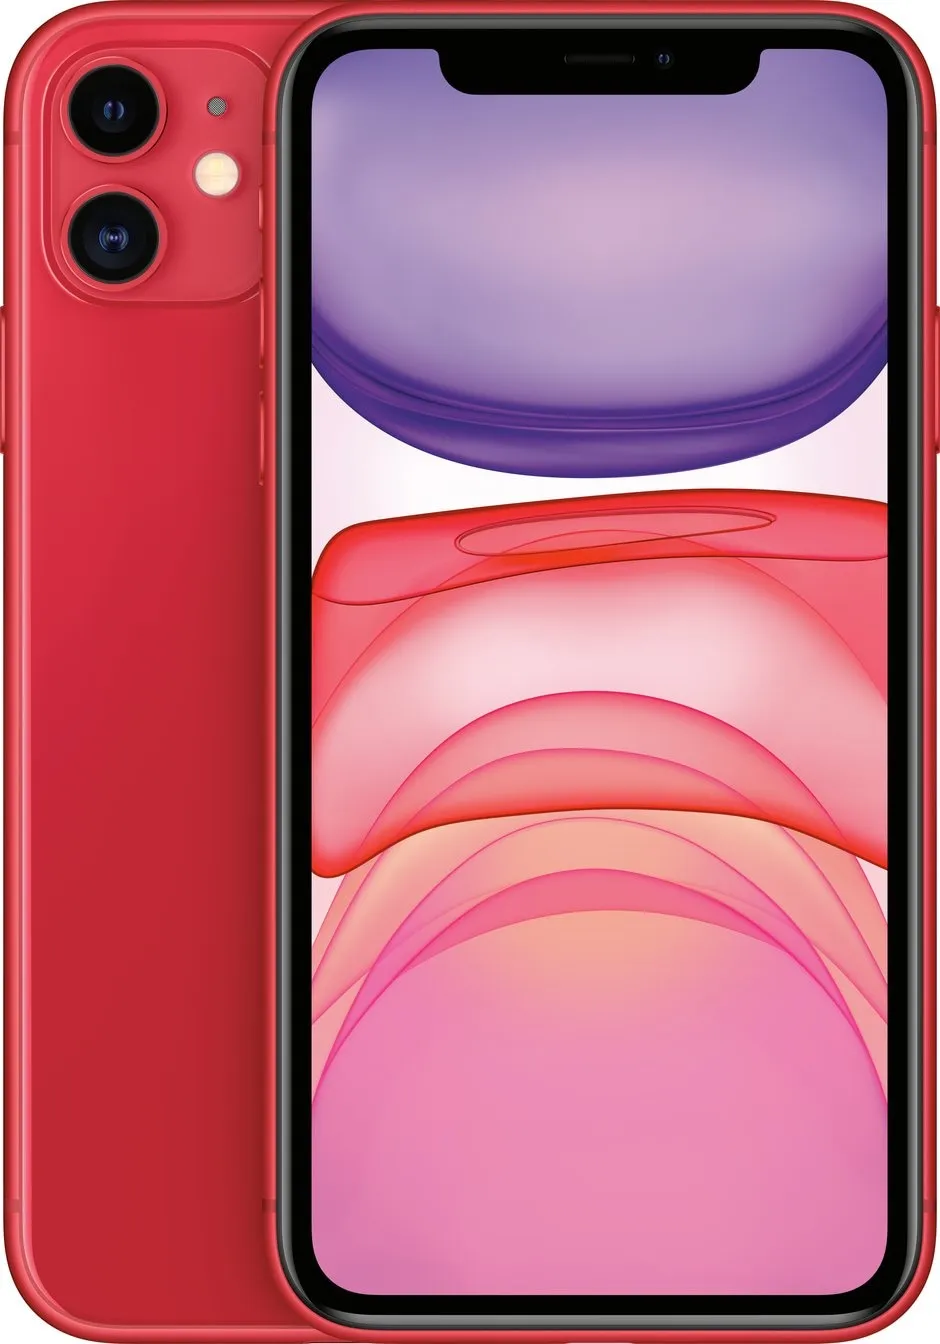 Смартфон Apple iPhone 11 64 ГБ красный - цена, купить на nout.kz